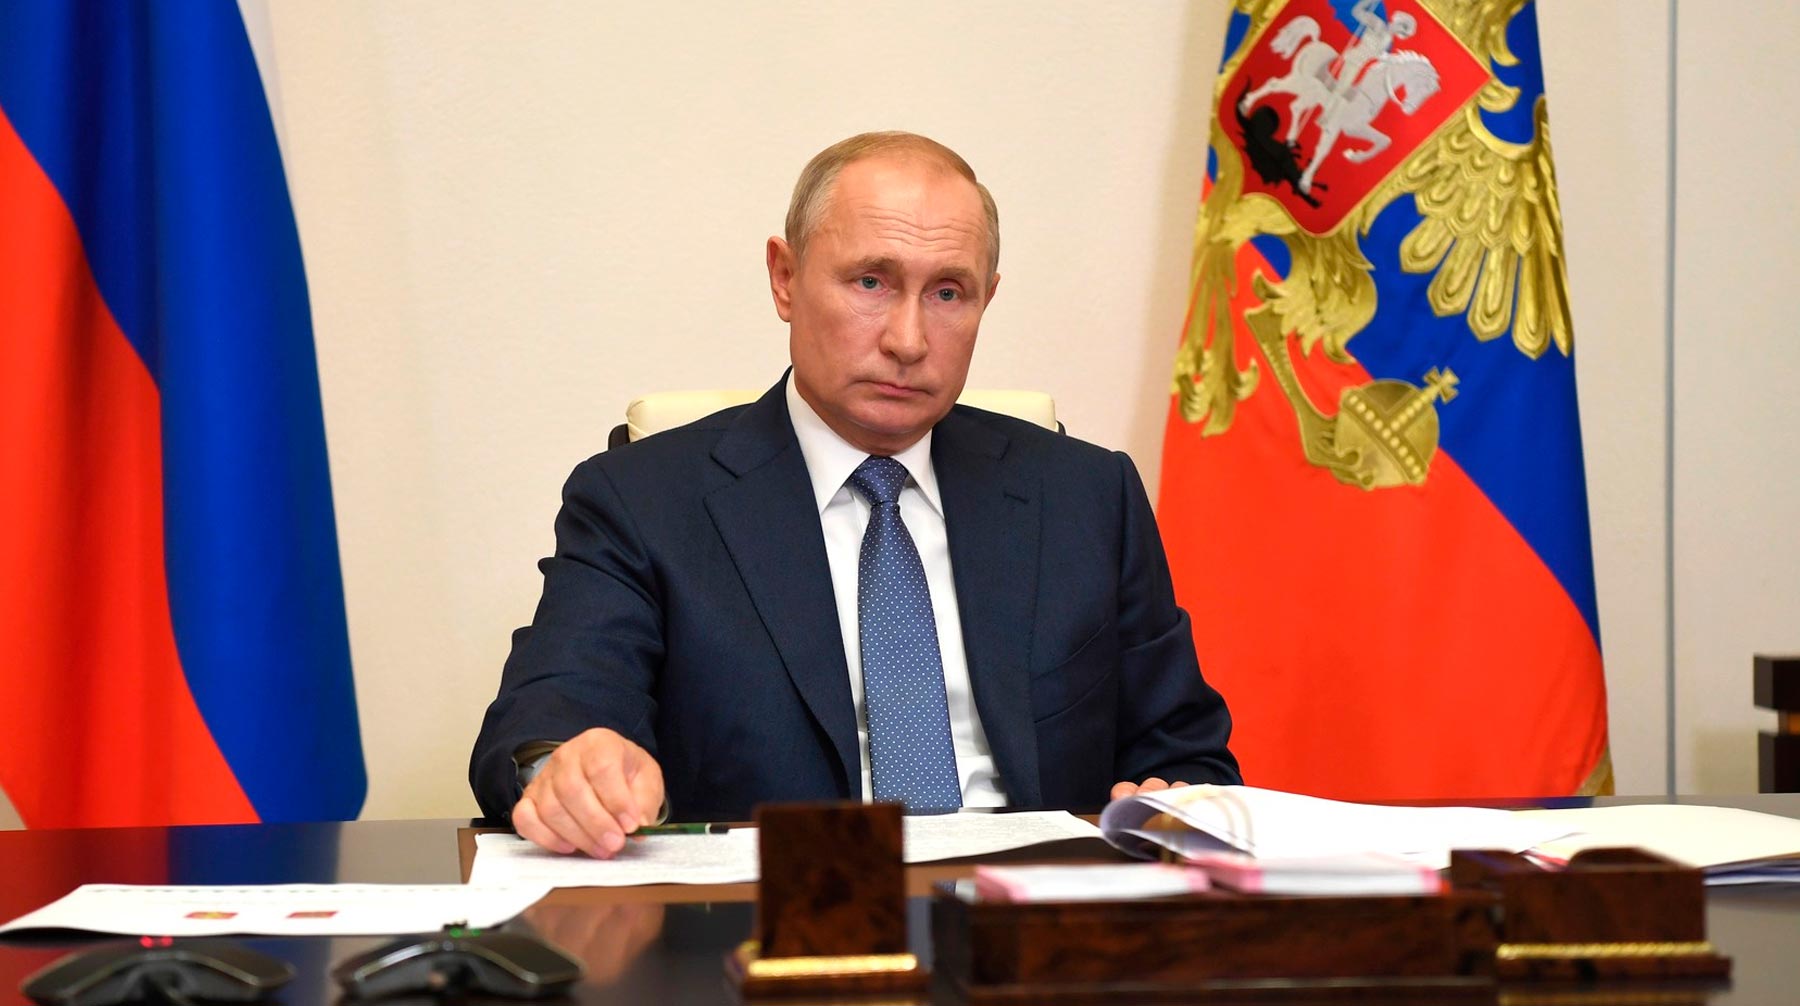 Президент России отметил необходимость адресно поддержать людей, оставшихся без работы Фото: © Kremlin Pool